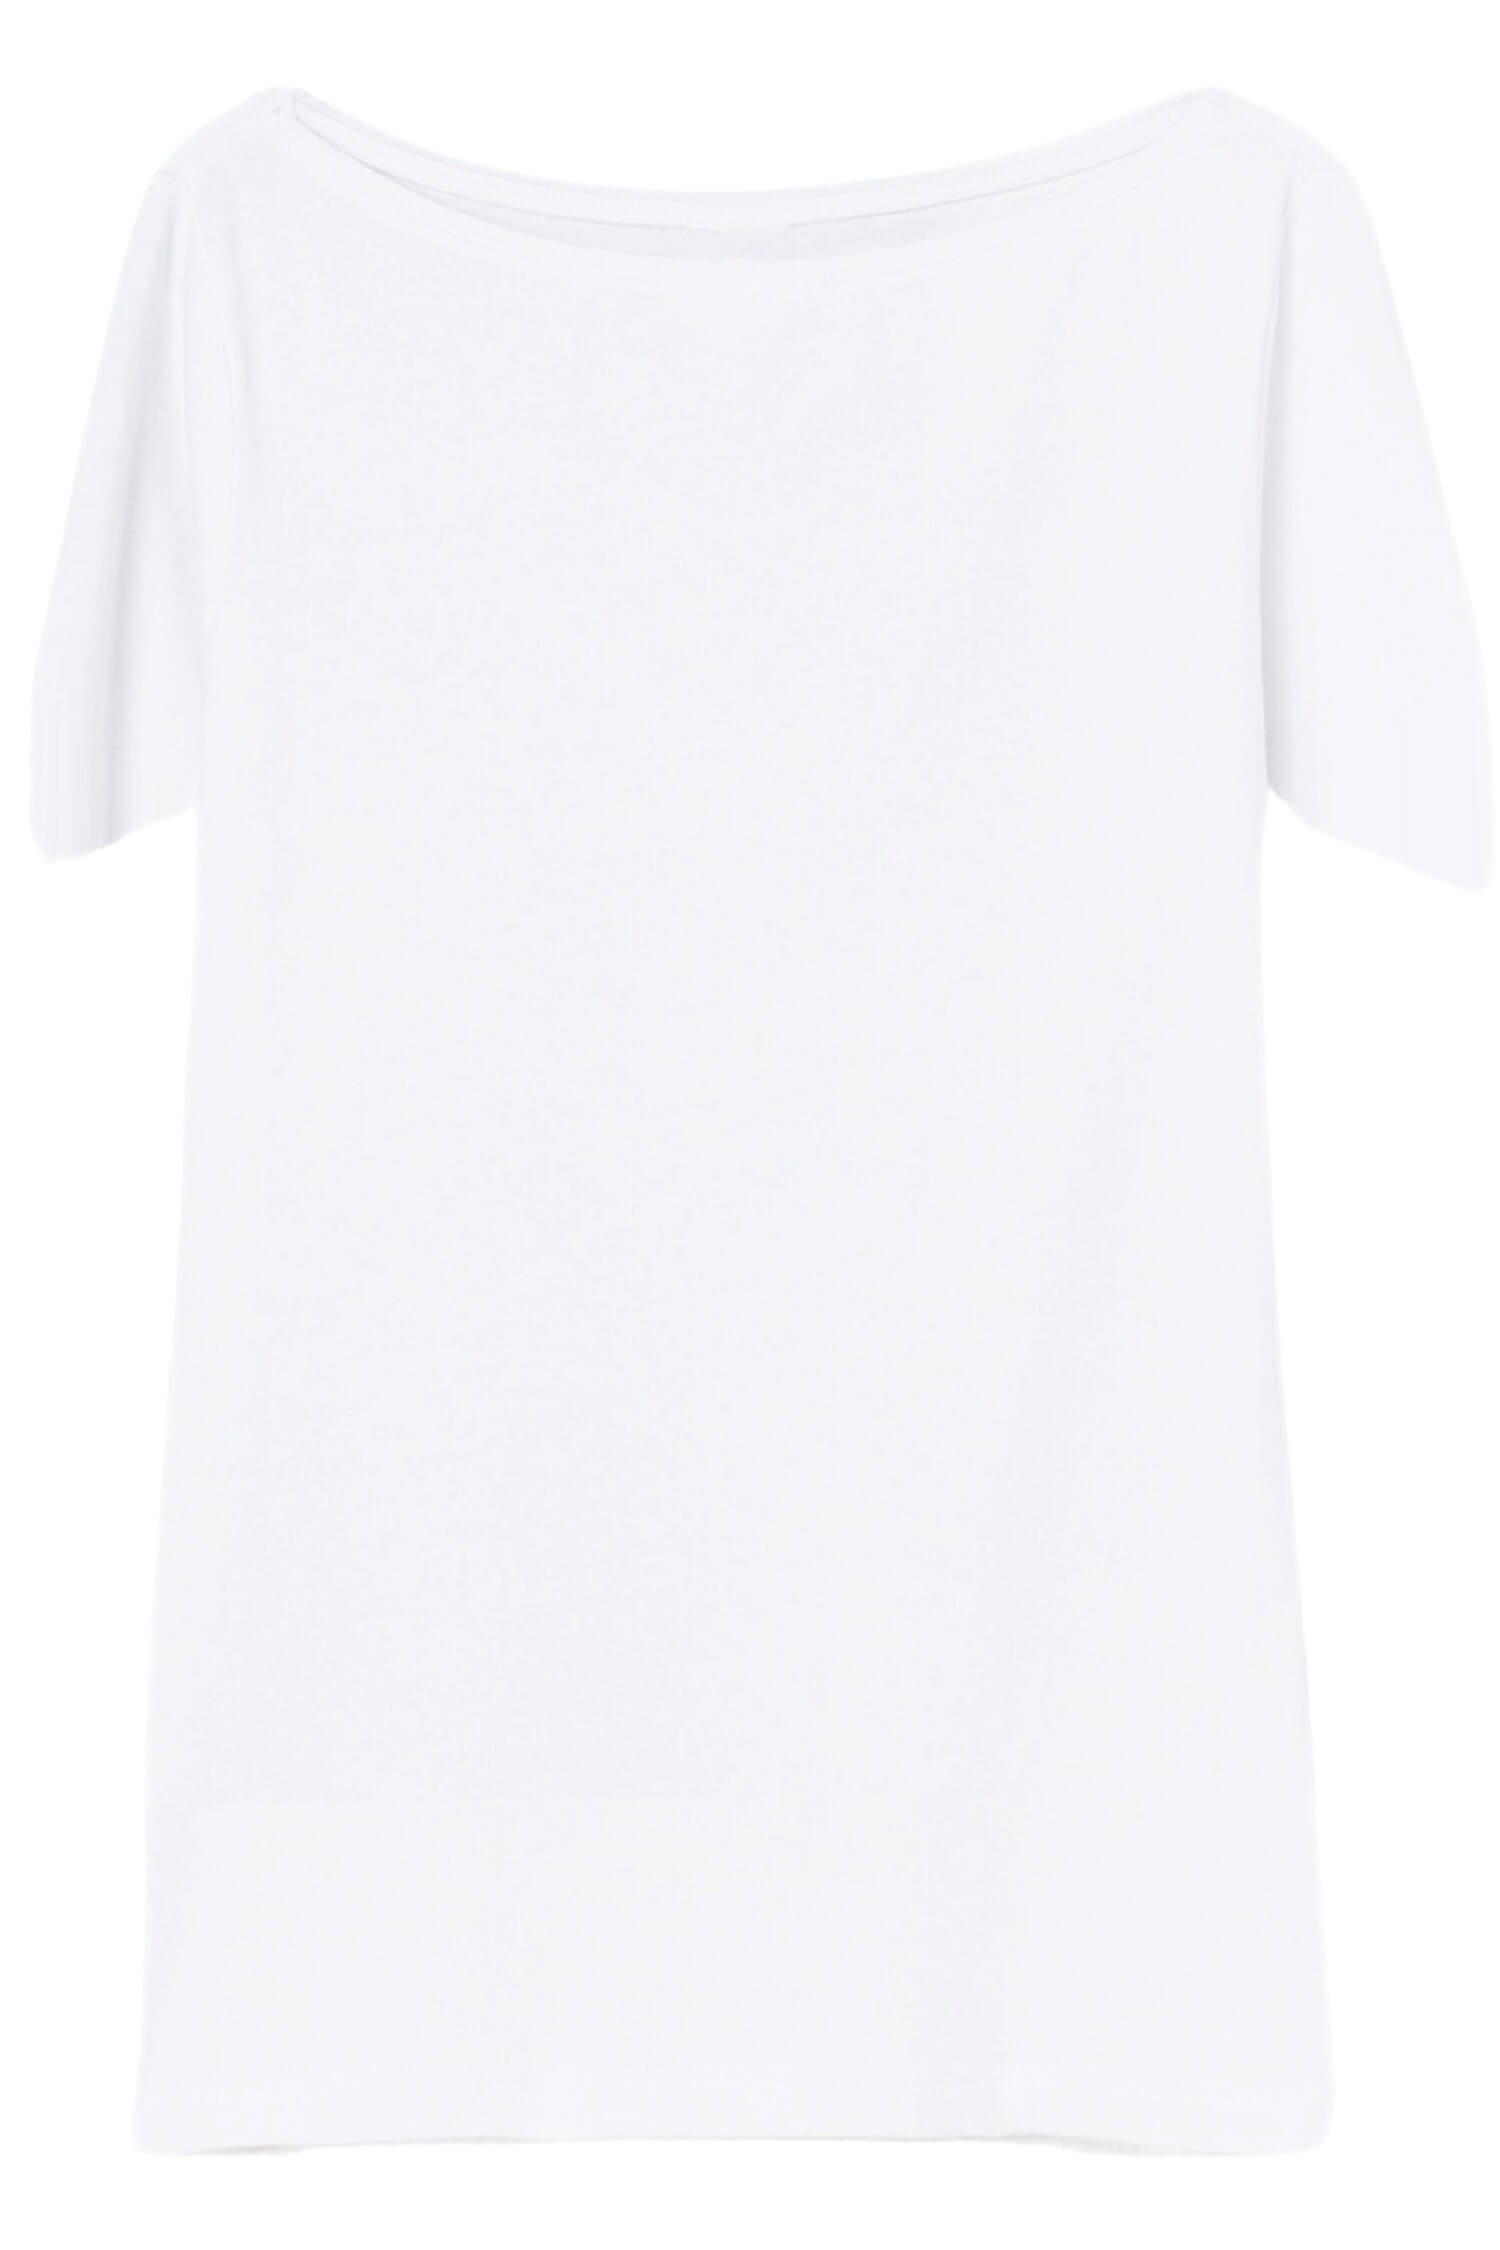 Danica dámské tričko s krátkým rukávem TSK-1005 bílá M